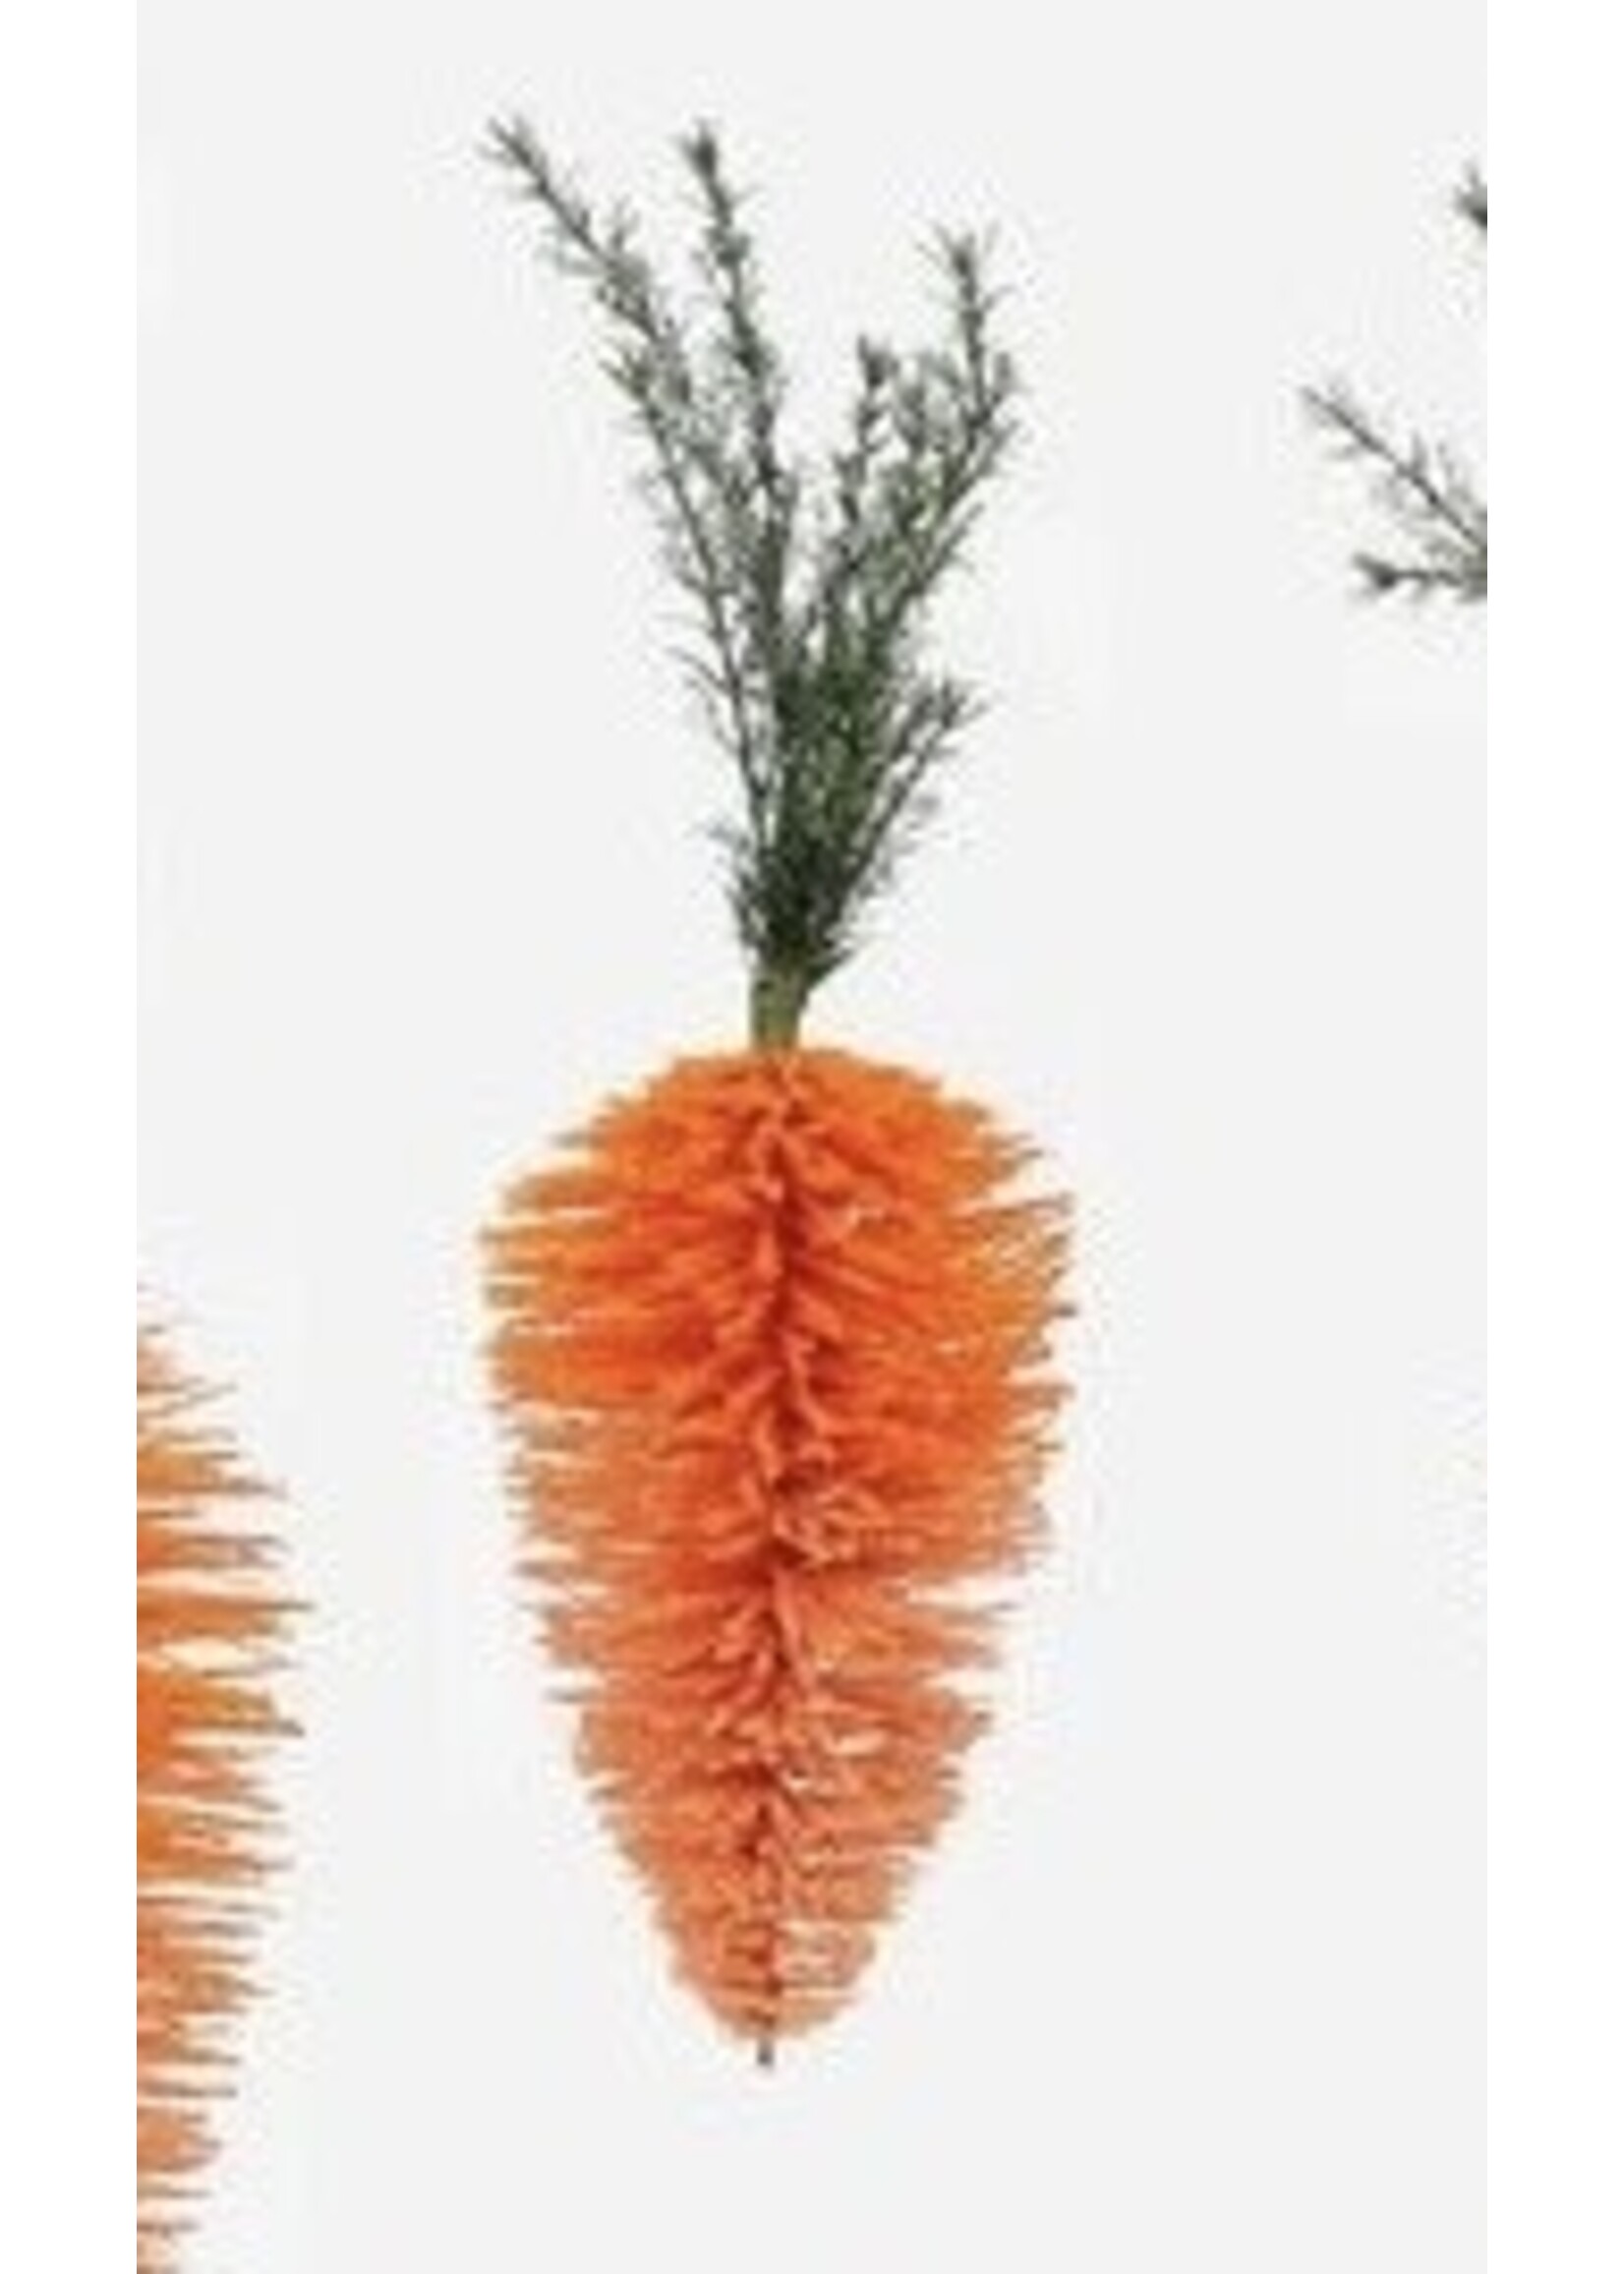 ONE HUNDRED 80 DEGREES Hanging Carrot 22"